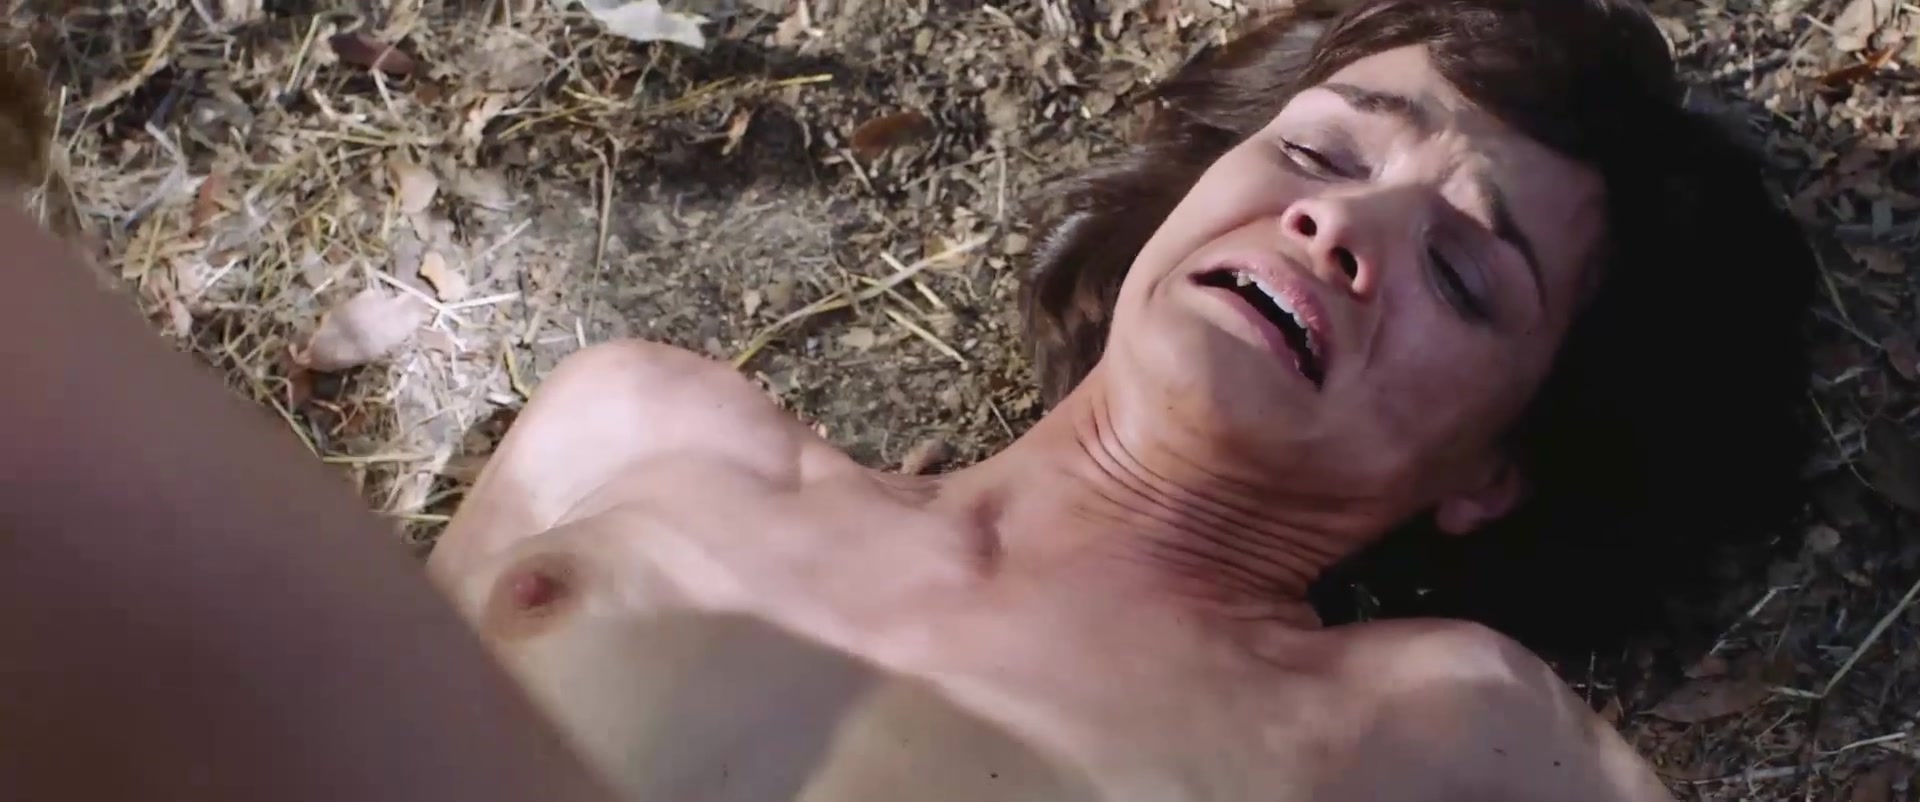 Jamie bernadette nude scene from spit